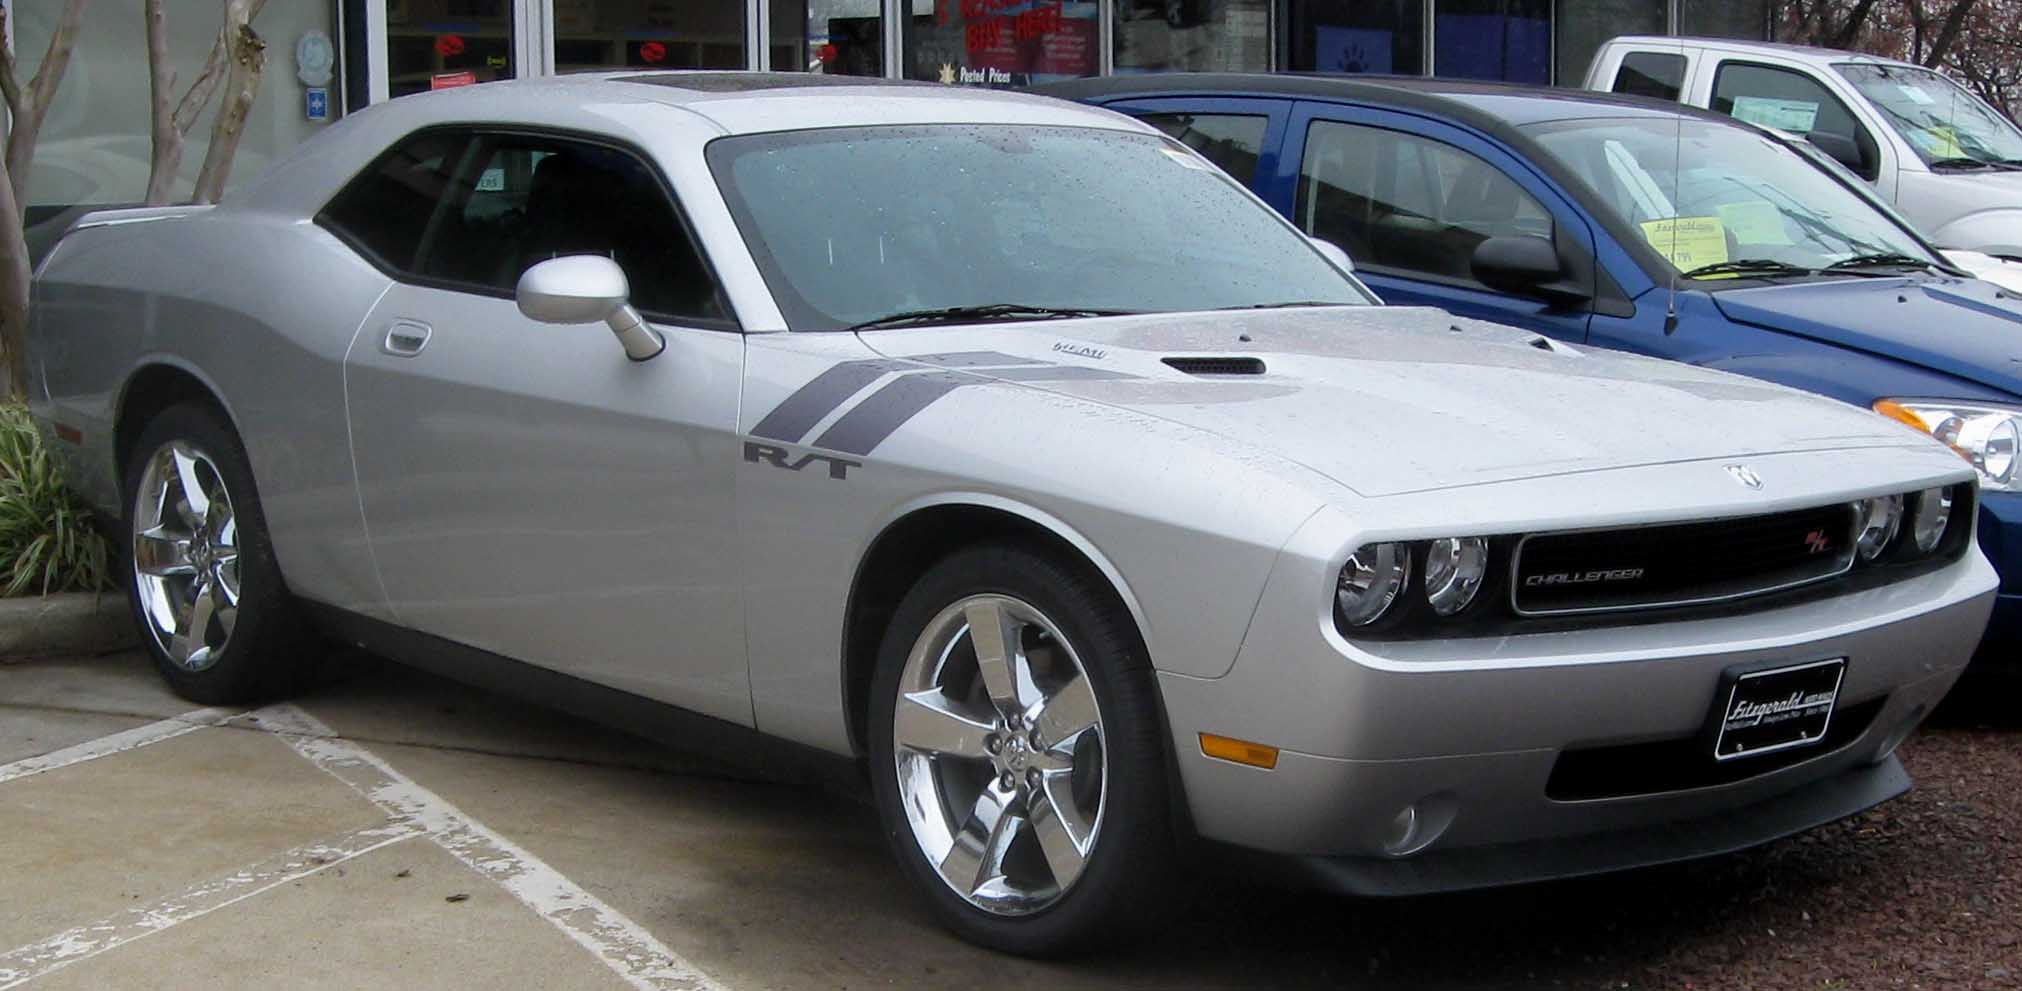 File:2009 Dodge Challenger RT.jpg